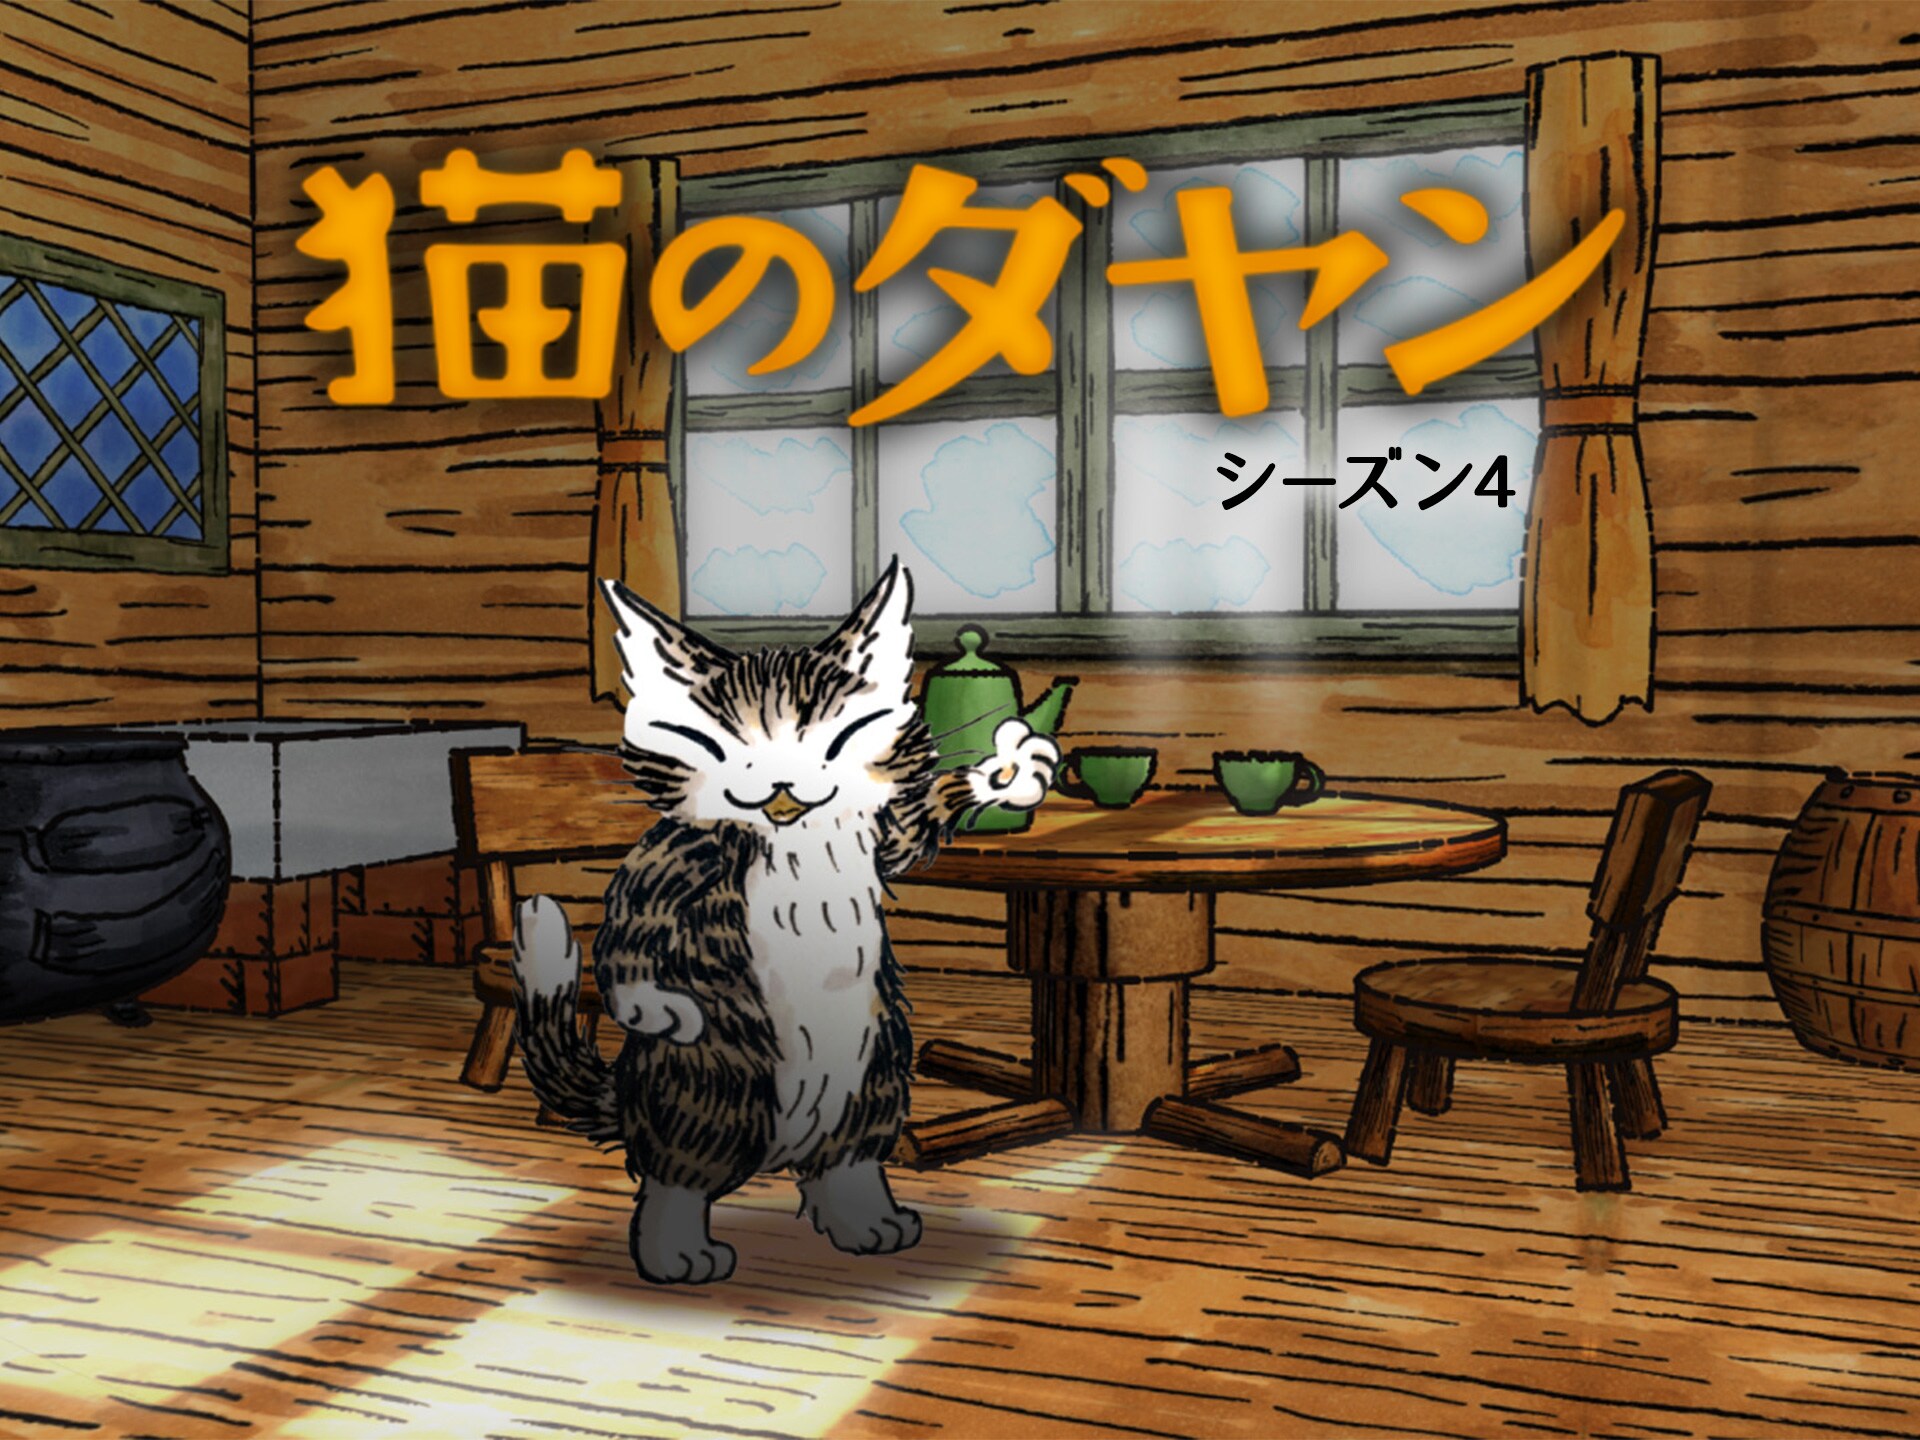 アニメ 猫のダヤン シーズン4 の動画まとめ 初月無料 動画配信サービスのビデオマーケット